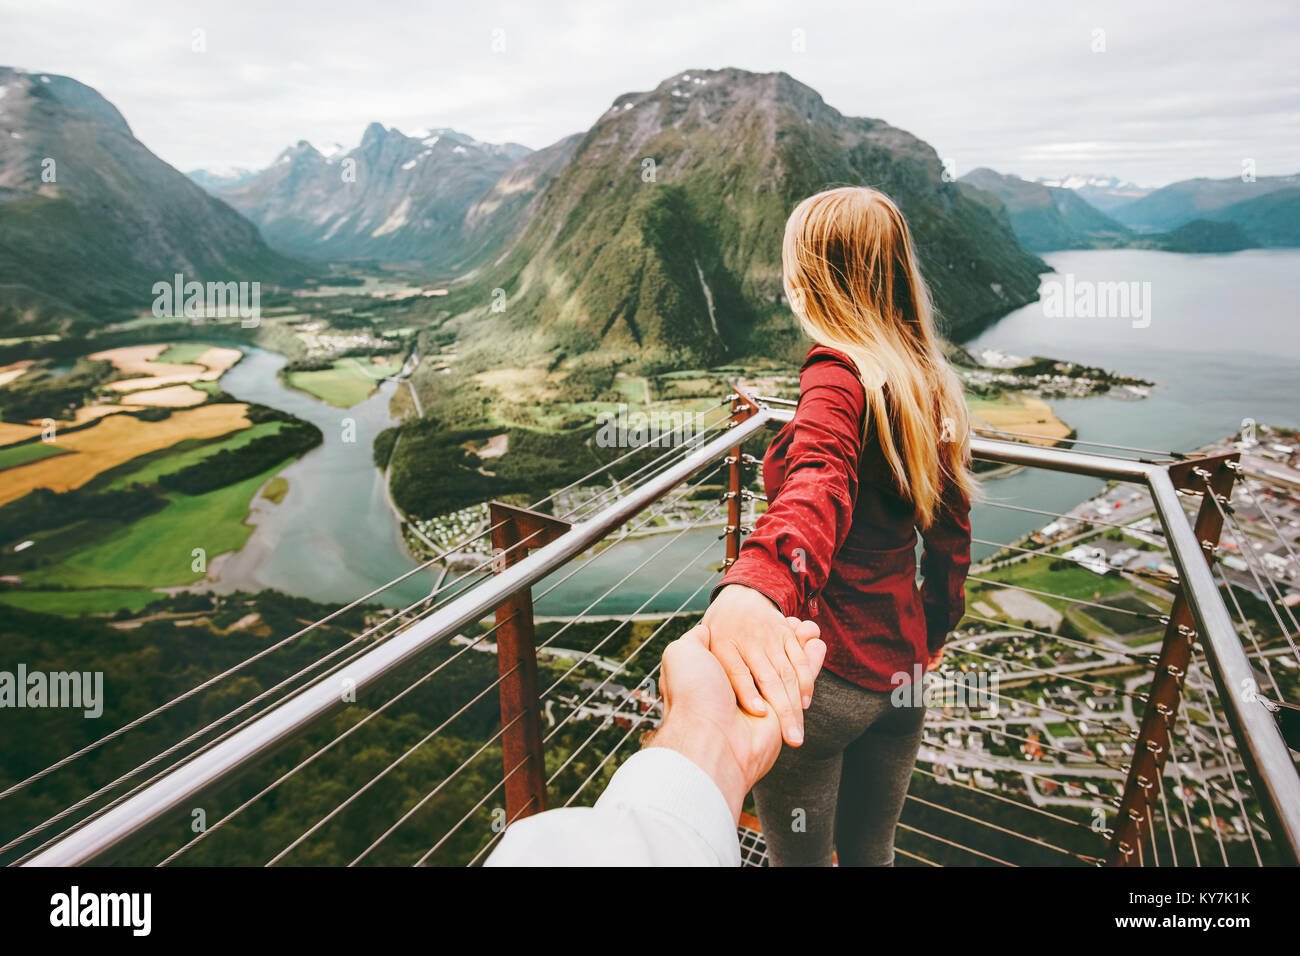 Couple Homme et Femme suivre main dans la main dans les montagnes de la Norvège et de l'amour avec une assurance vie émotions concept. Jeune famille voyageant adventur active Banque D'Images